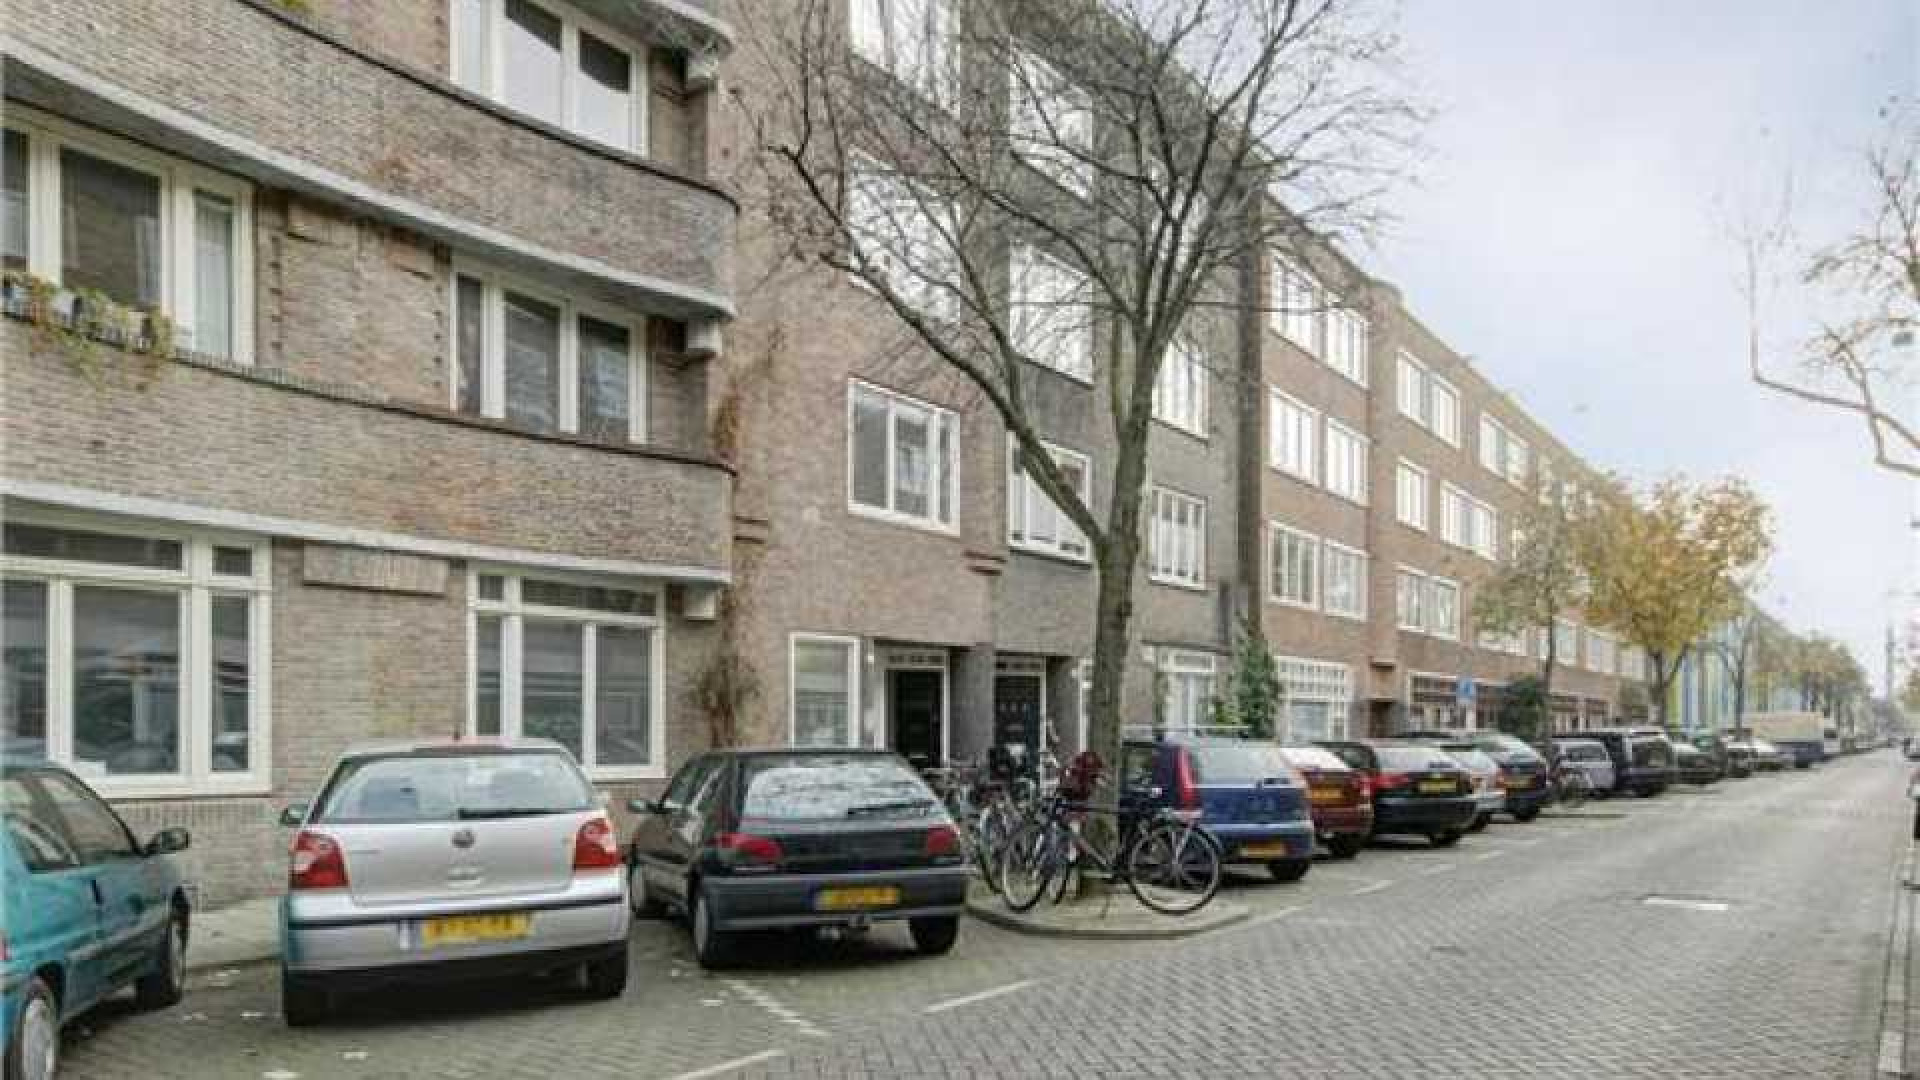 Linda de Mol helpt Gooische Vrouwen actrice Lies Visschedijk aan nieuw huis. Zie foto's